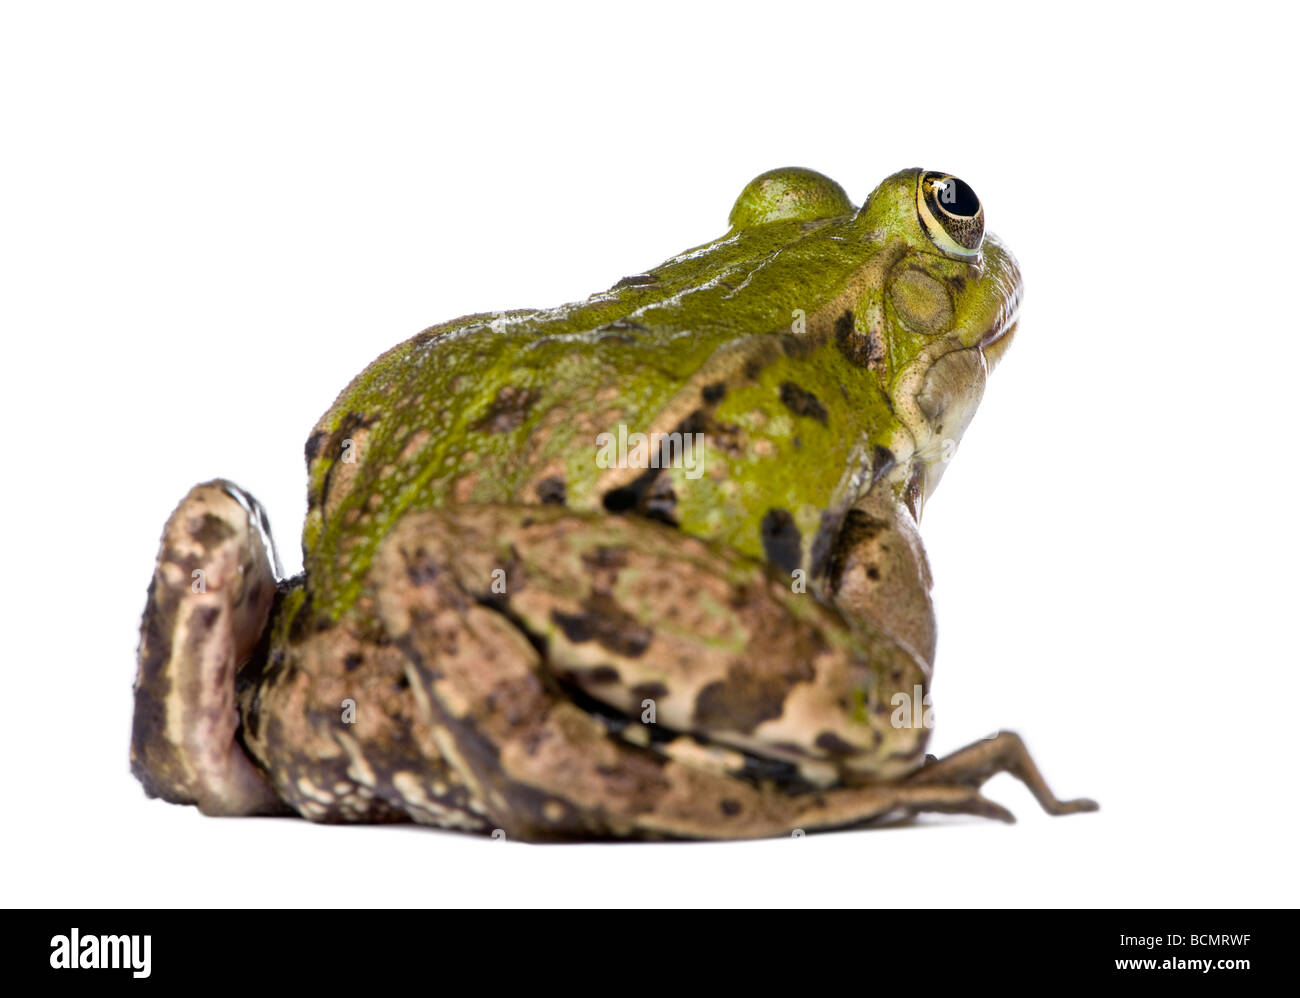 Vista posteriore di una rana verde, Rana esculenta, di fronte a uno sfondo bianco, studio shot Foto Stock